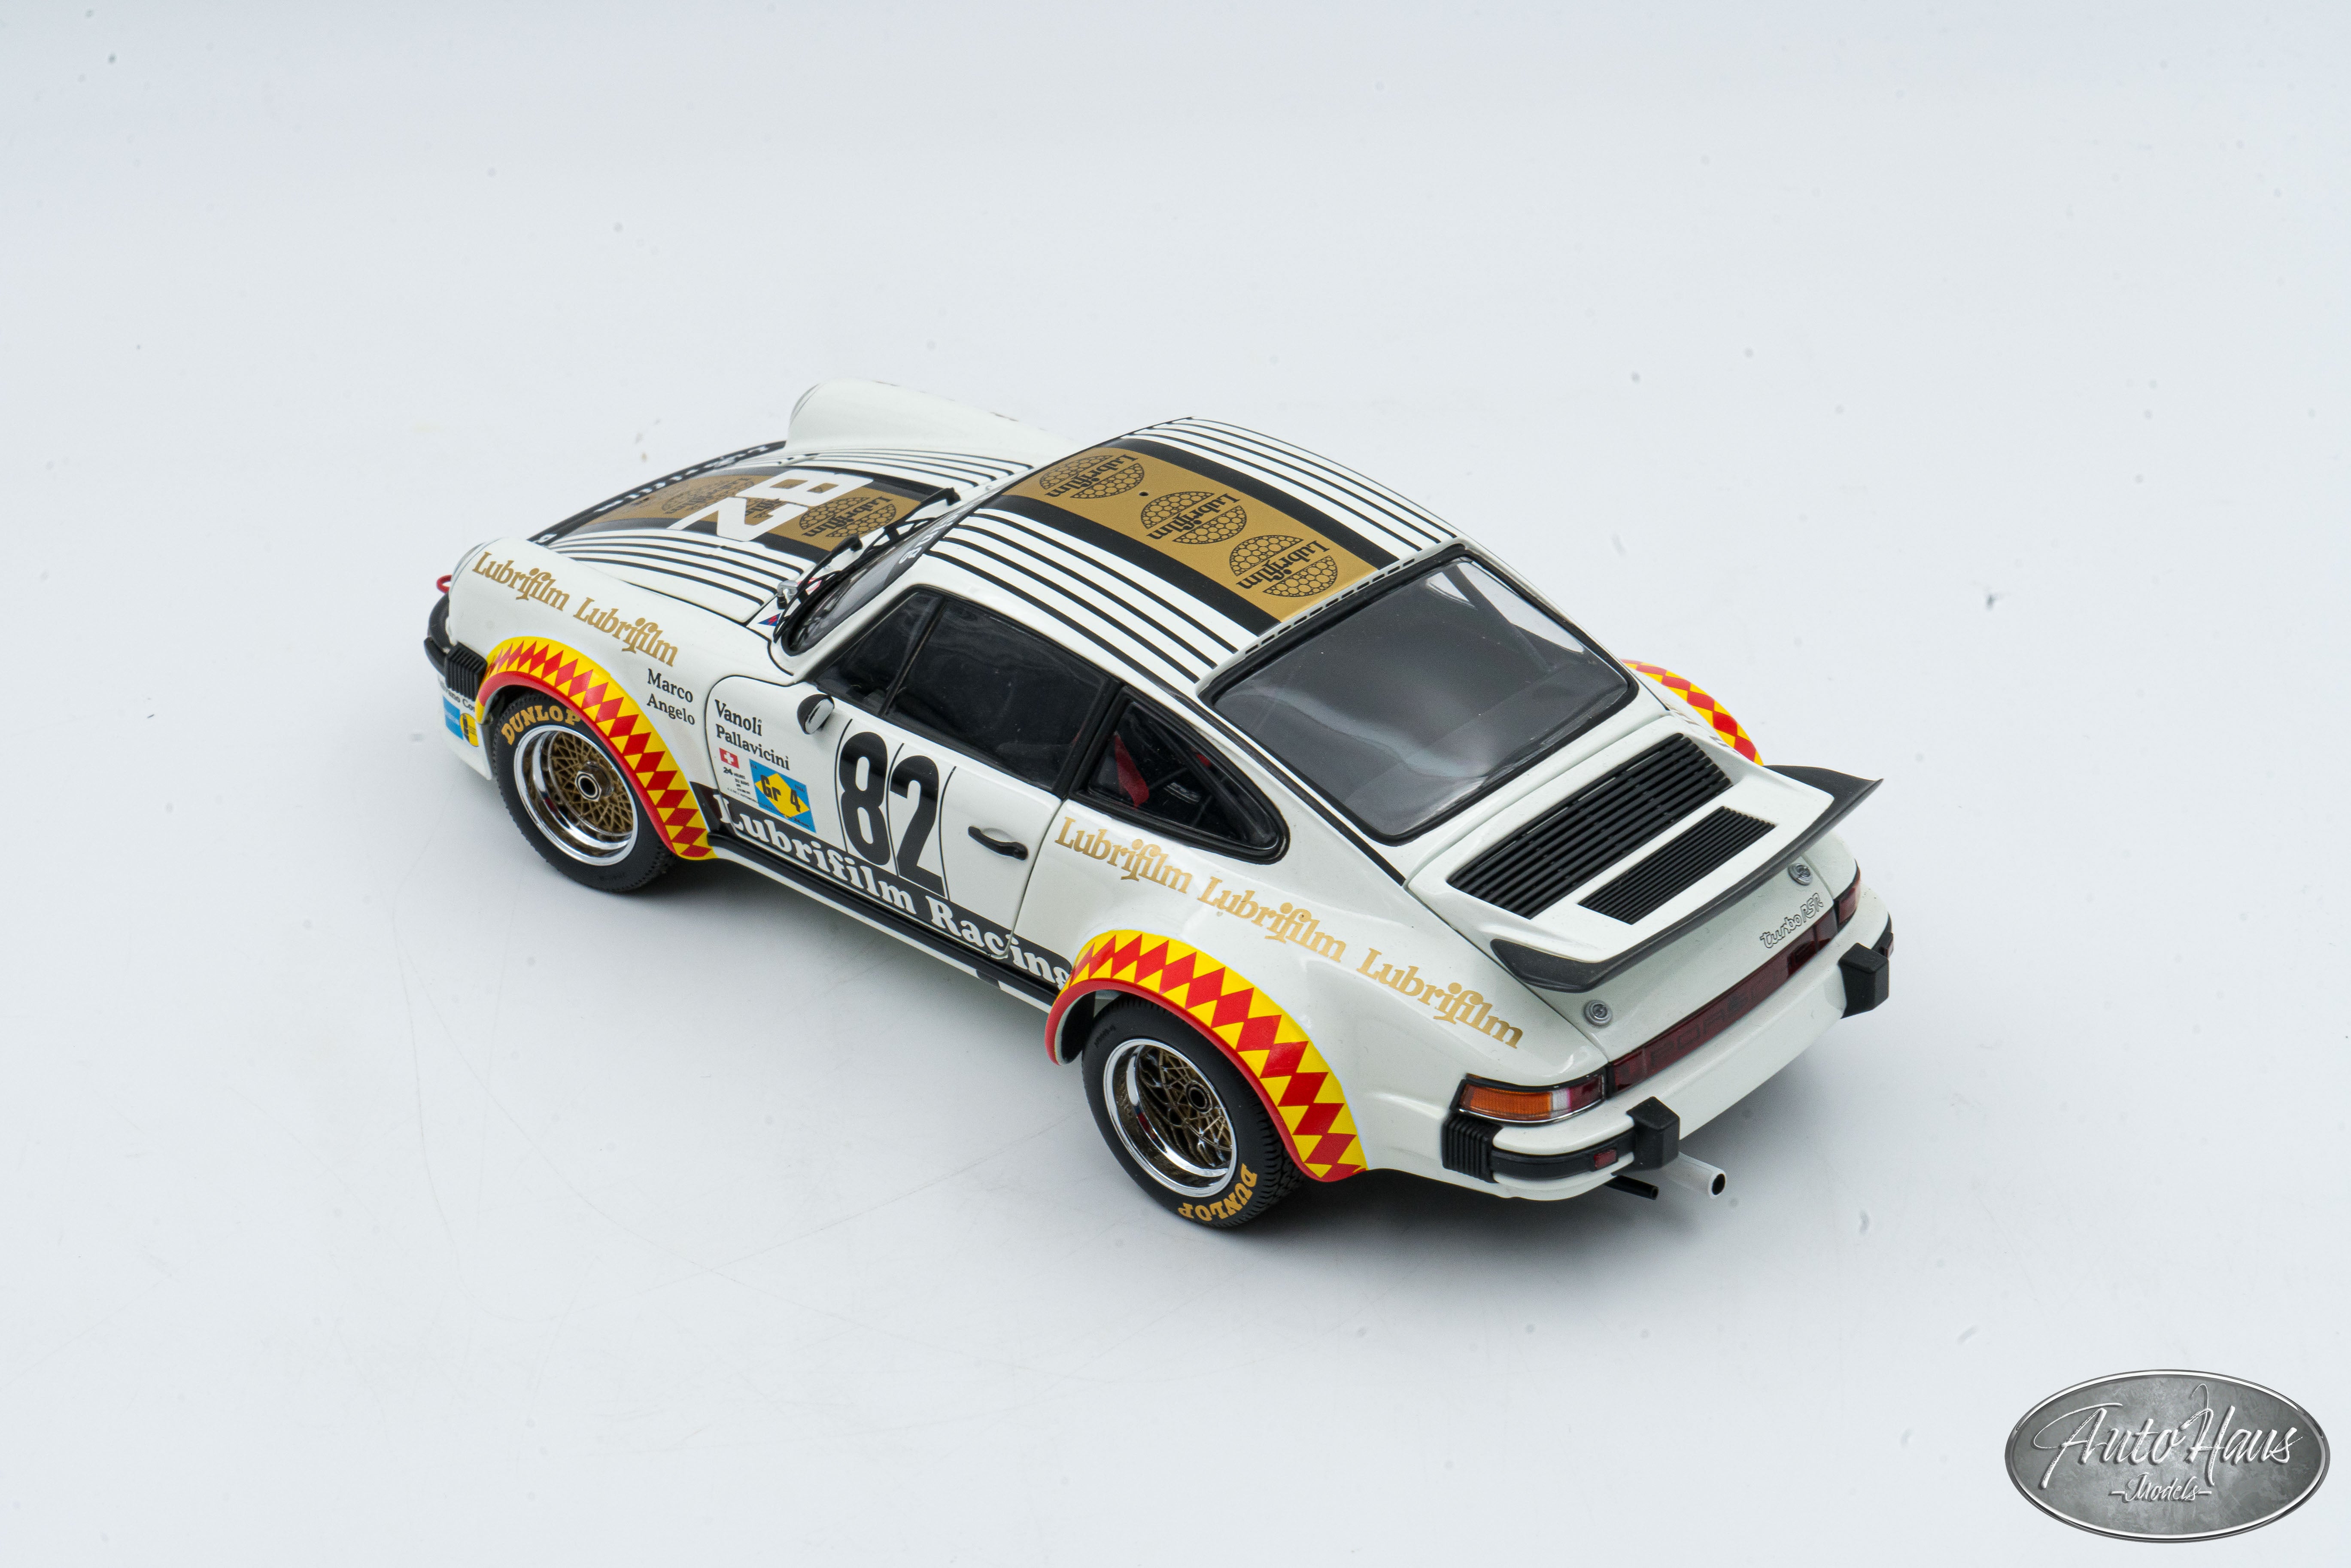 好評最新作*激レア絶版*EXOTO*1/18*1979 Porsche 935 Turbo #0 Interscope 1979 Daytona 24h≠BBR エグゾト